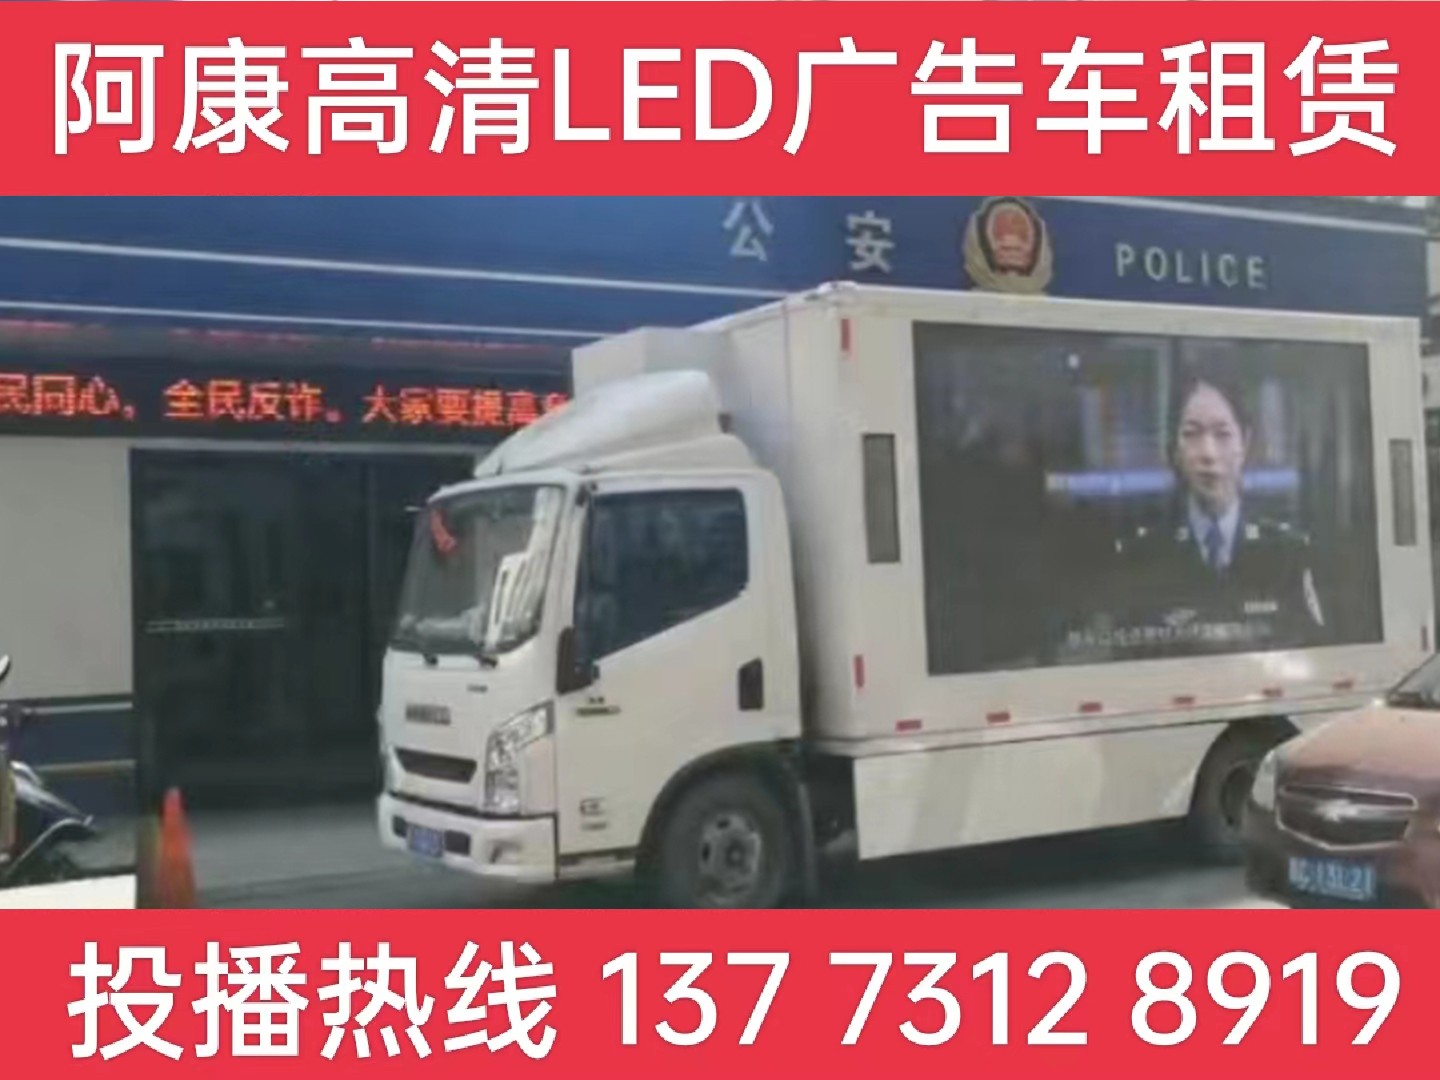 扬州LED广告车租赁-反诈宣传